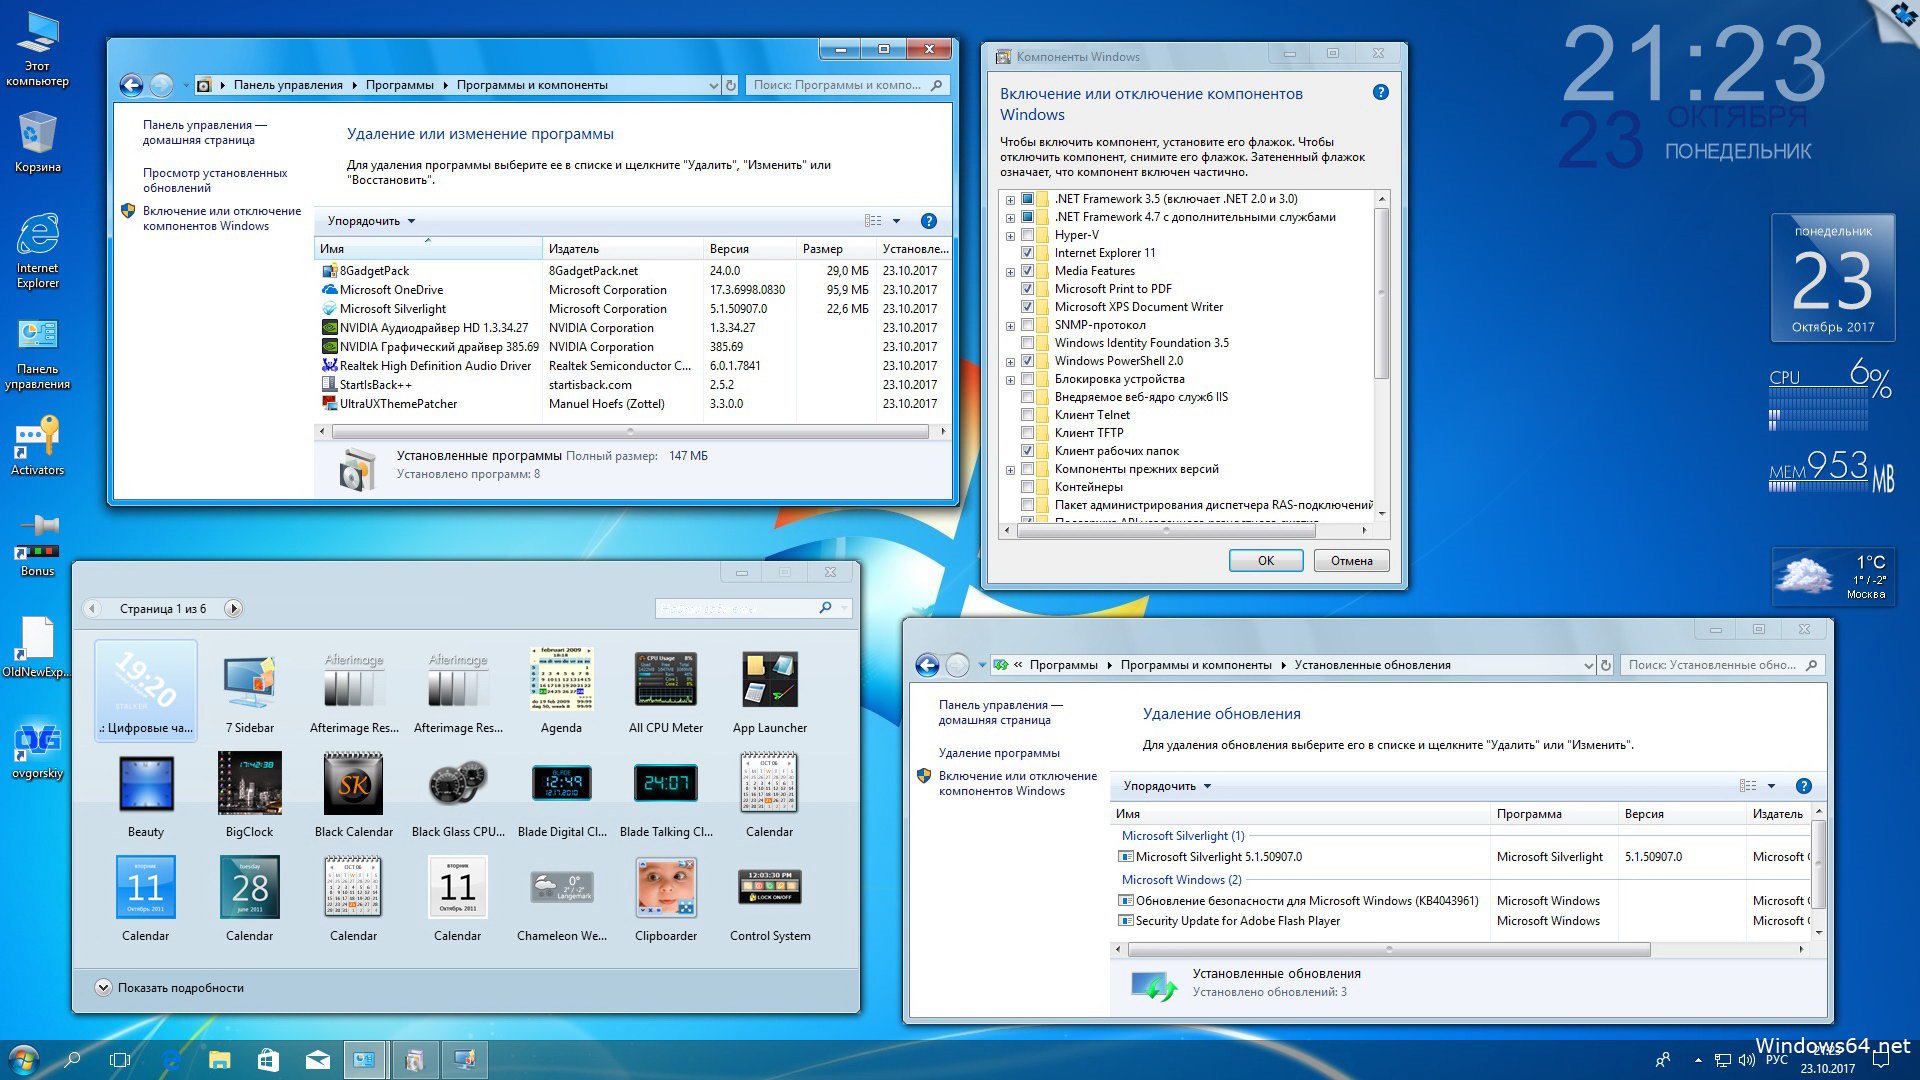 Виндовс 10 версия 1709. Библиотеки виндовс 10. Microsoft Windows 10. 8 Gadget Pack.